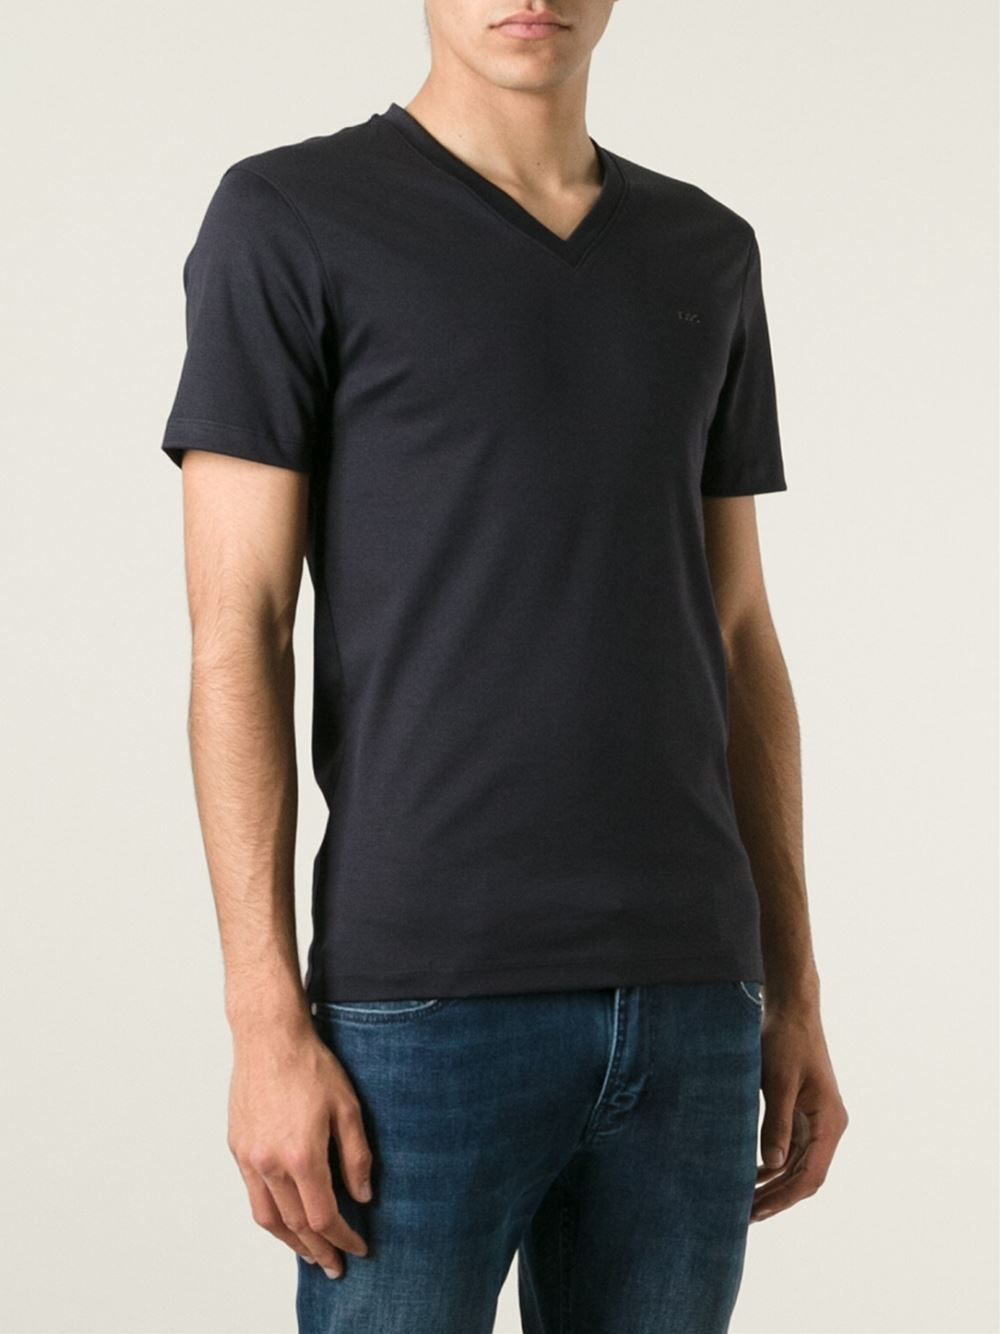 Michael Kors V-Neck T-Shirt in Black for Men - Lyst